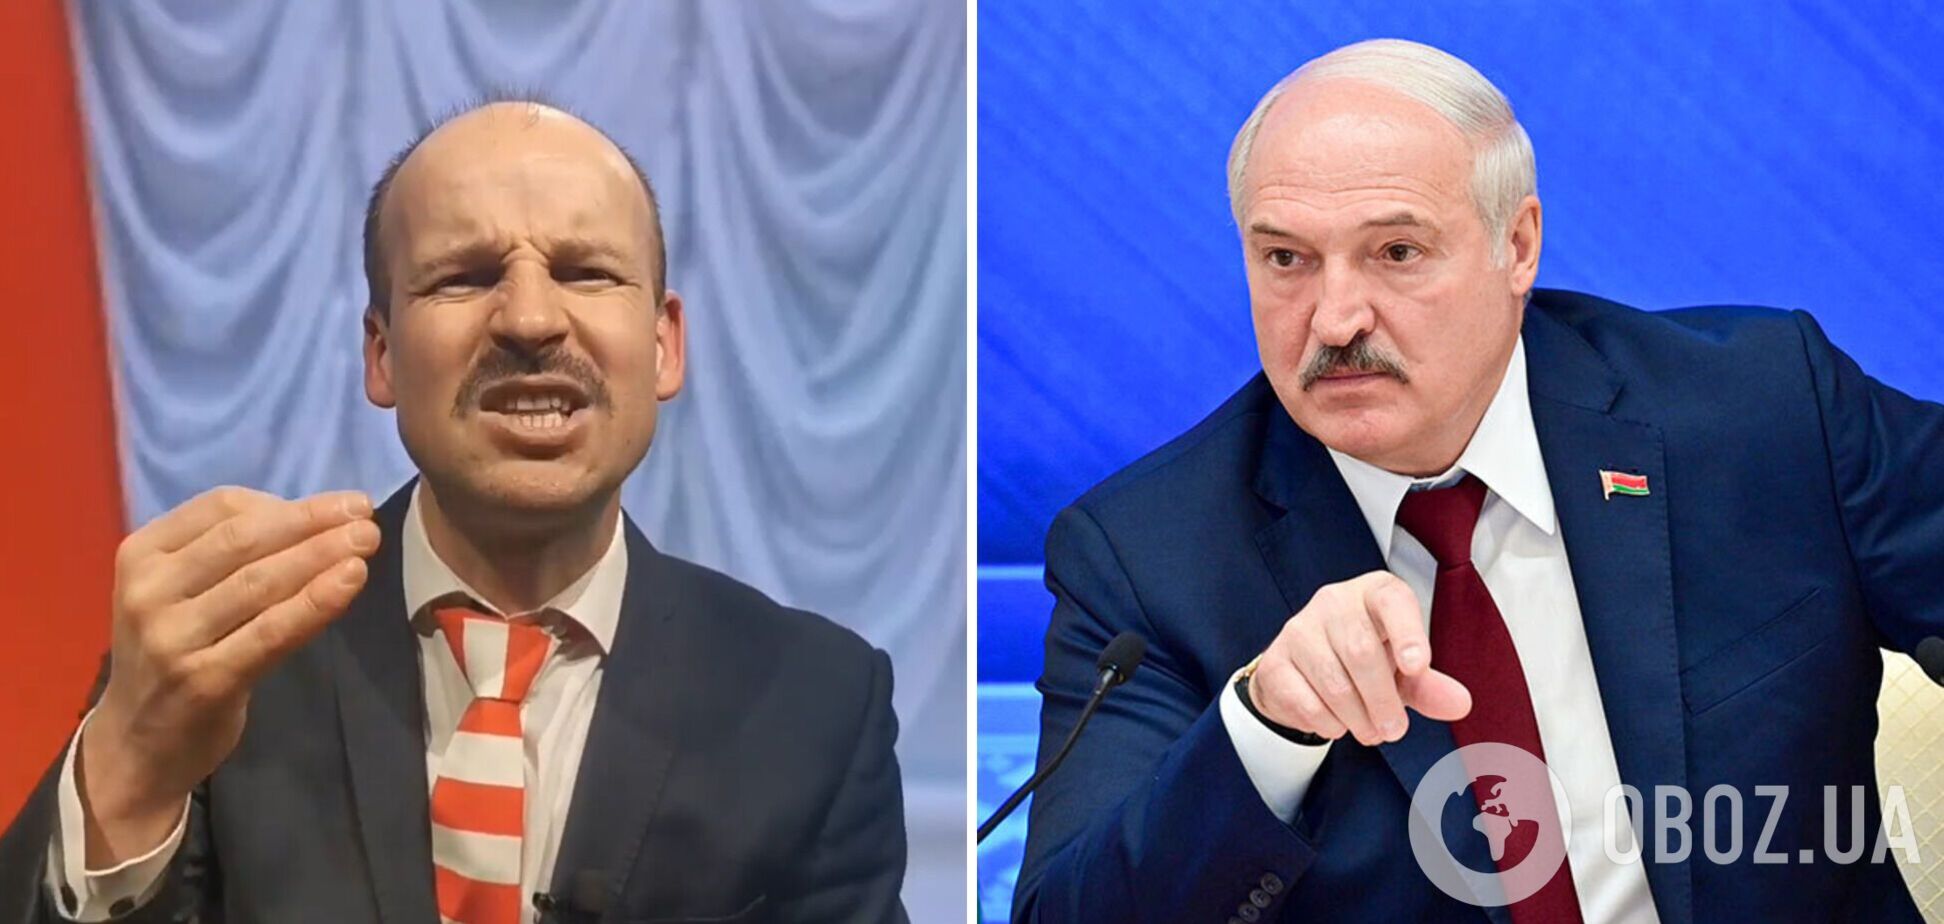 Великий в образі Лукашенка потролив Білорусь: згадав про прокладки з 'крильцями' і кнопкові телефони. Відео